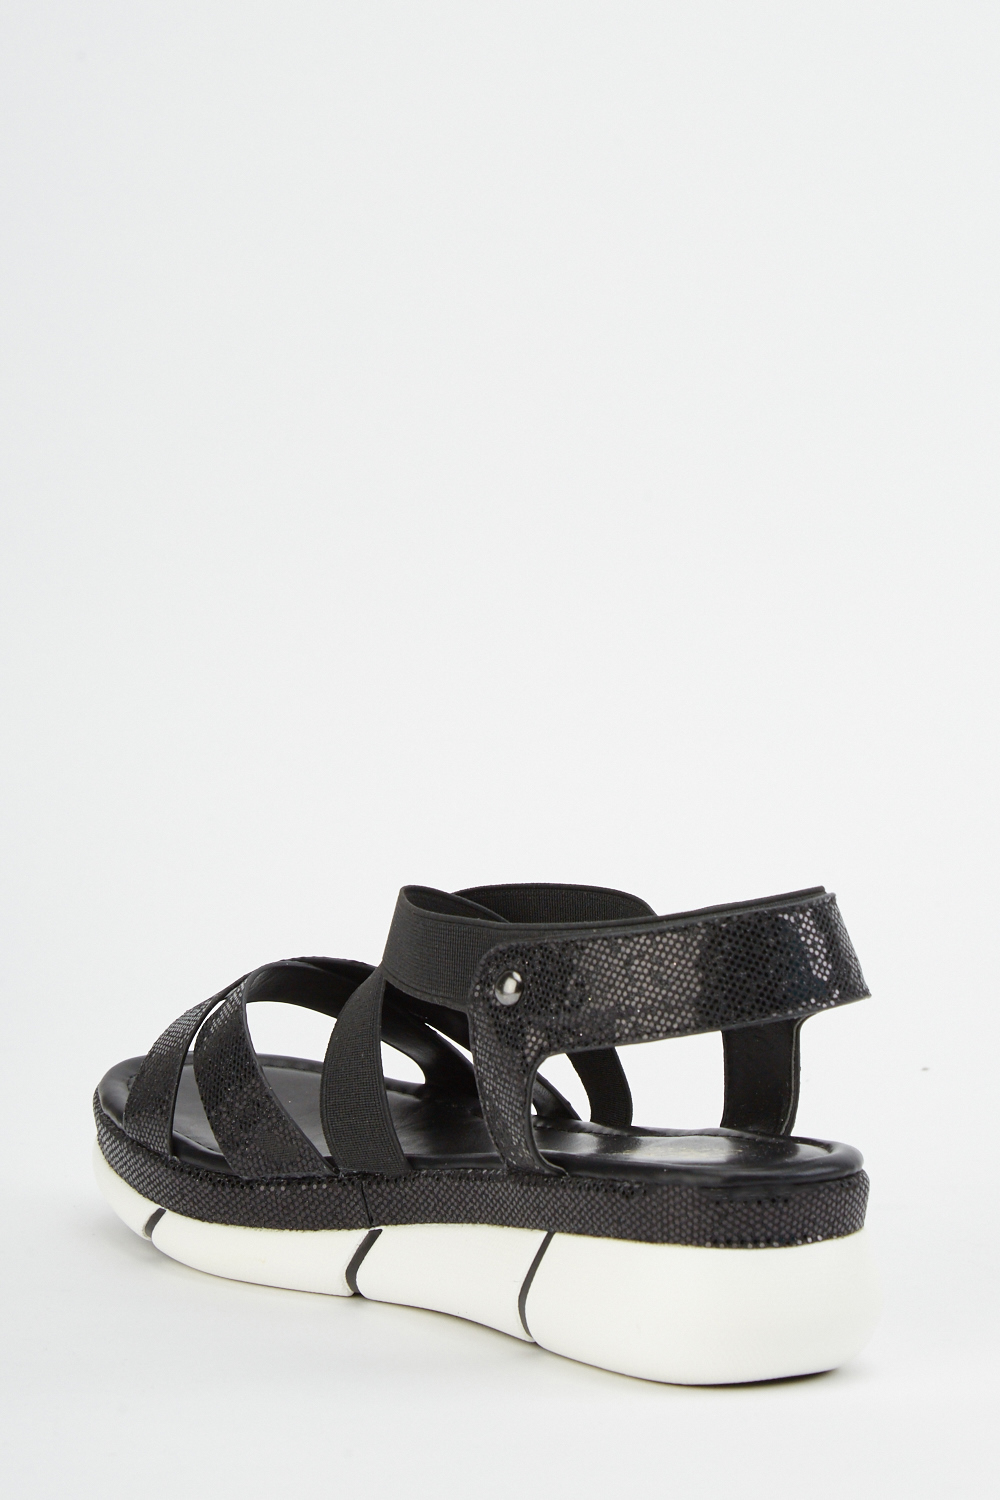 Criss-Cross Mock Croc Sandals - Just $6